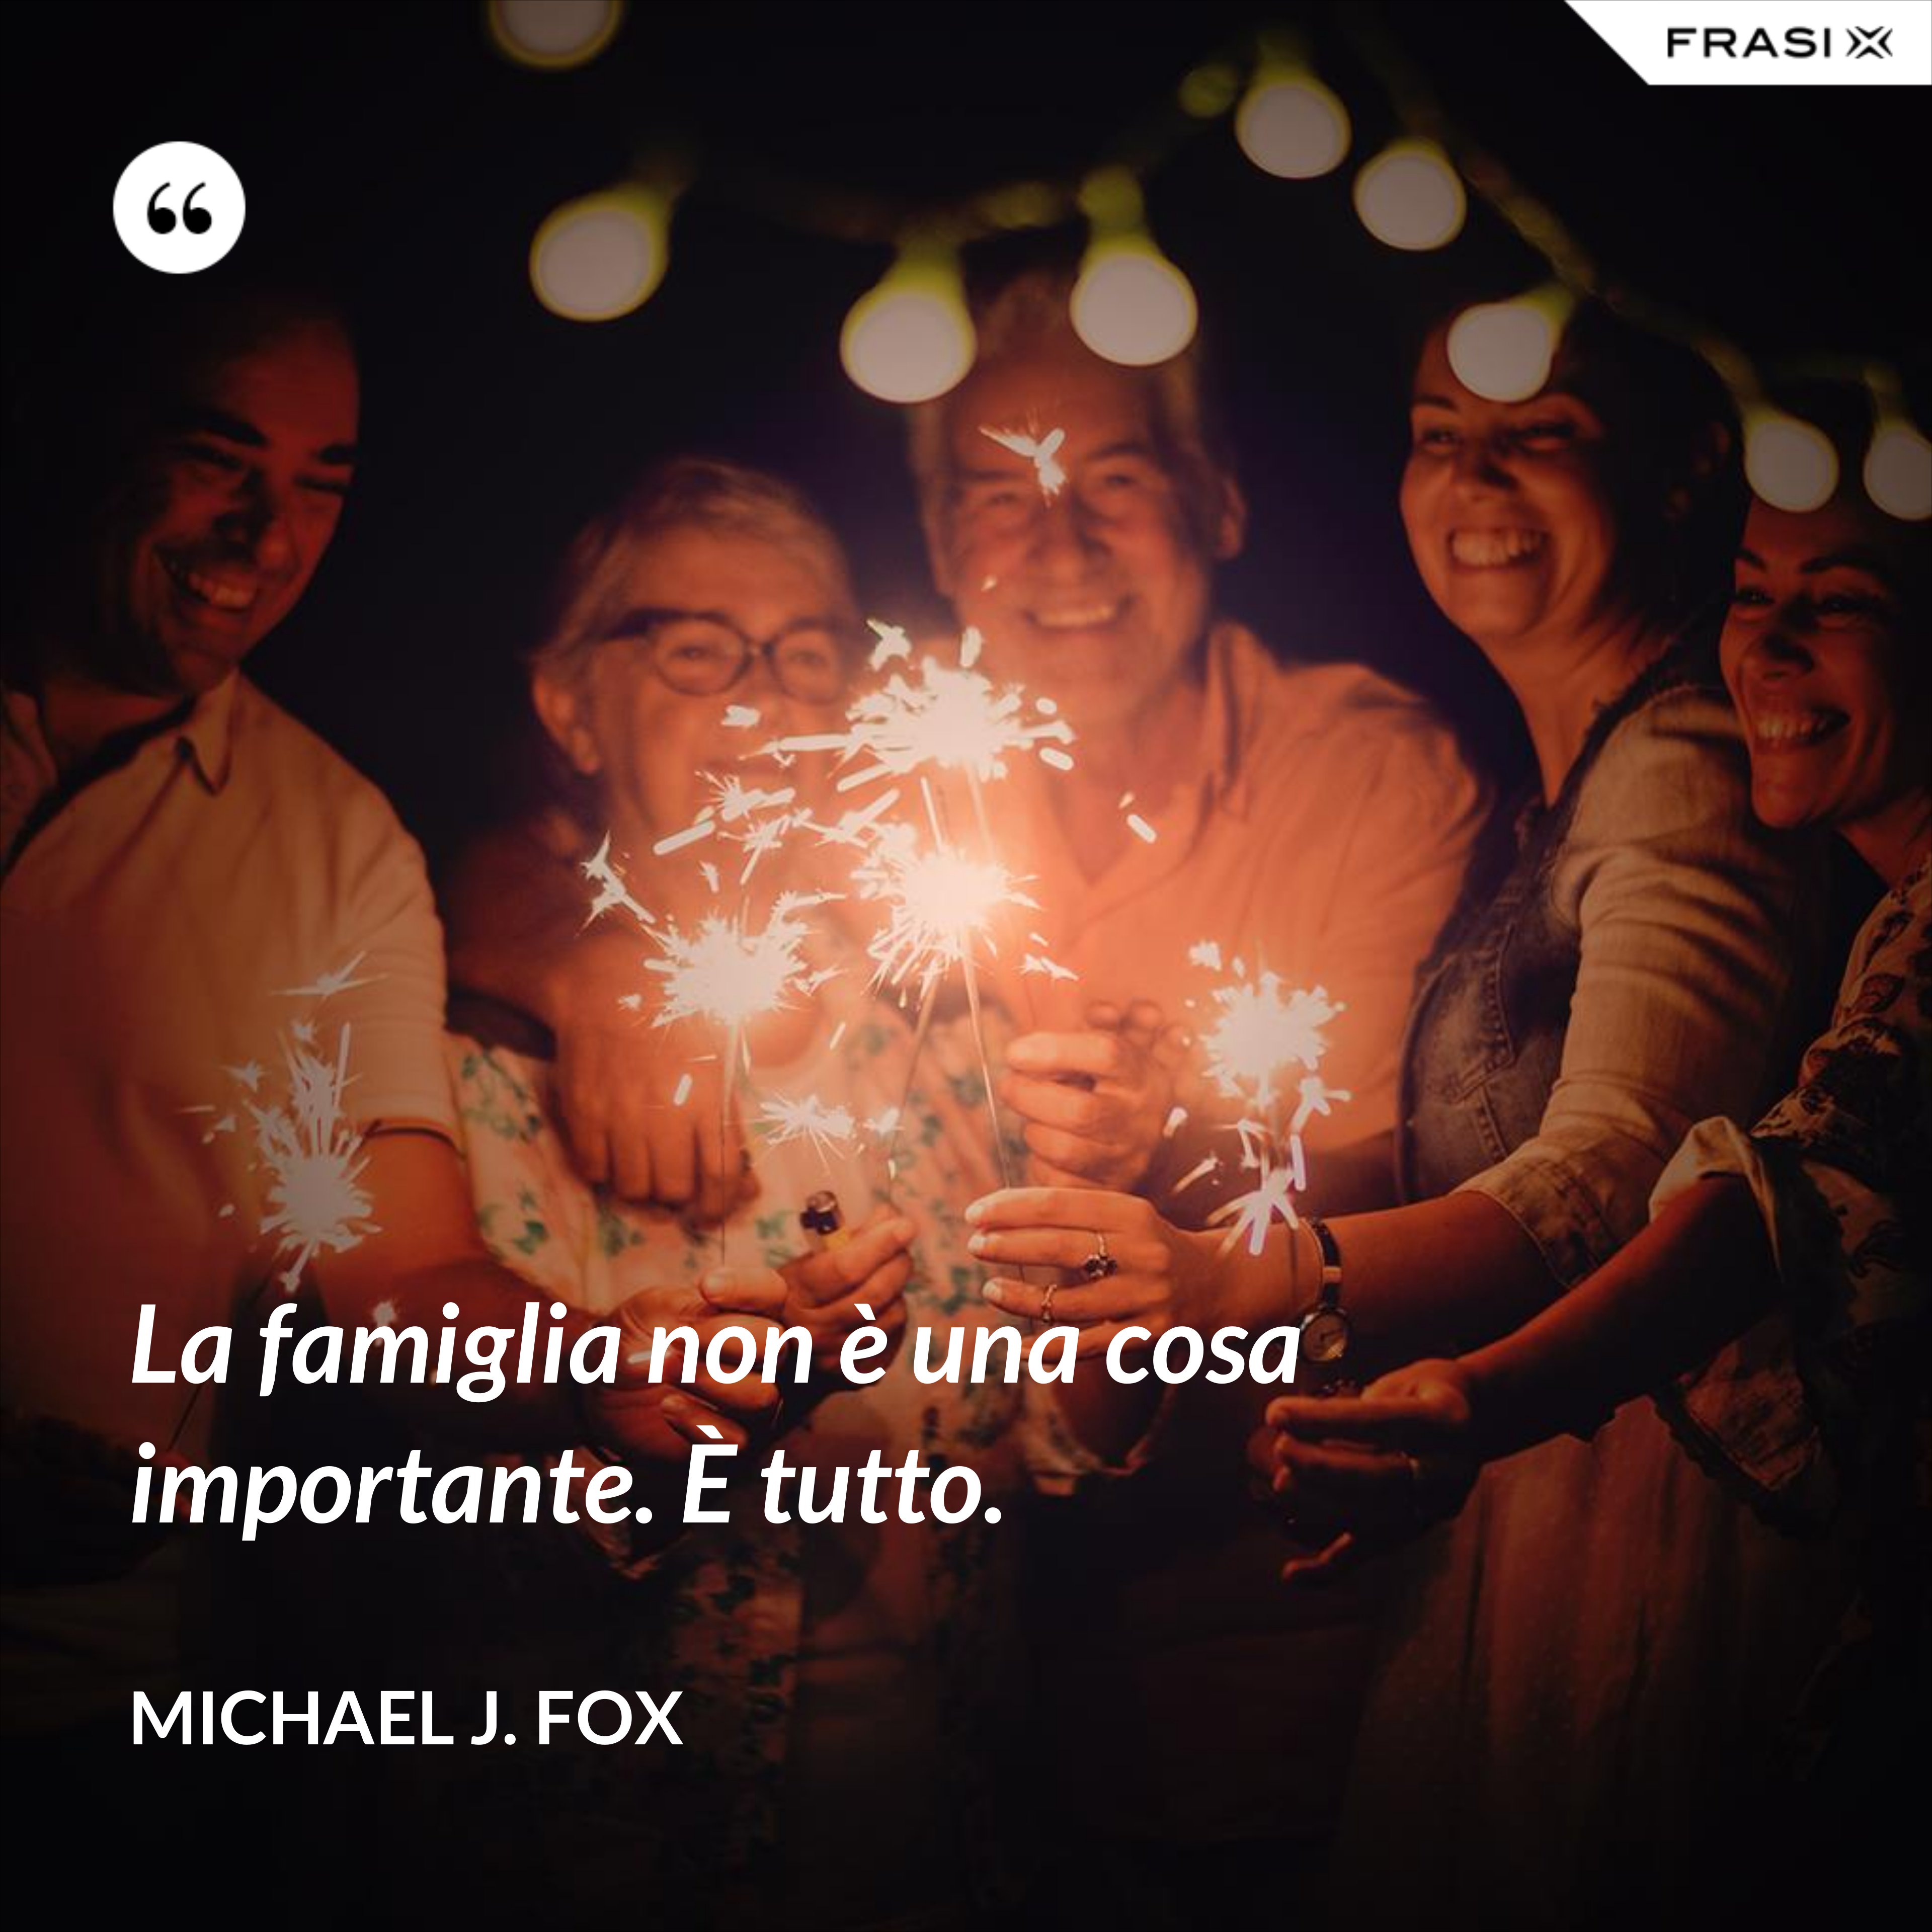 La famiglia non è una cosa importante. È tutto. - Michael J. Fox